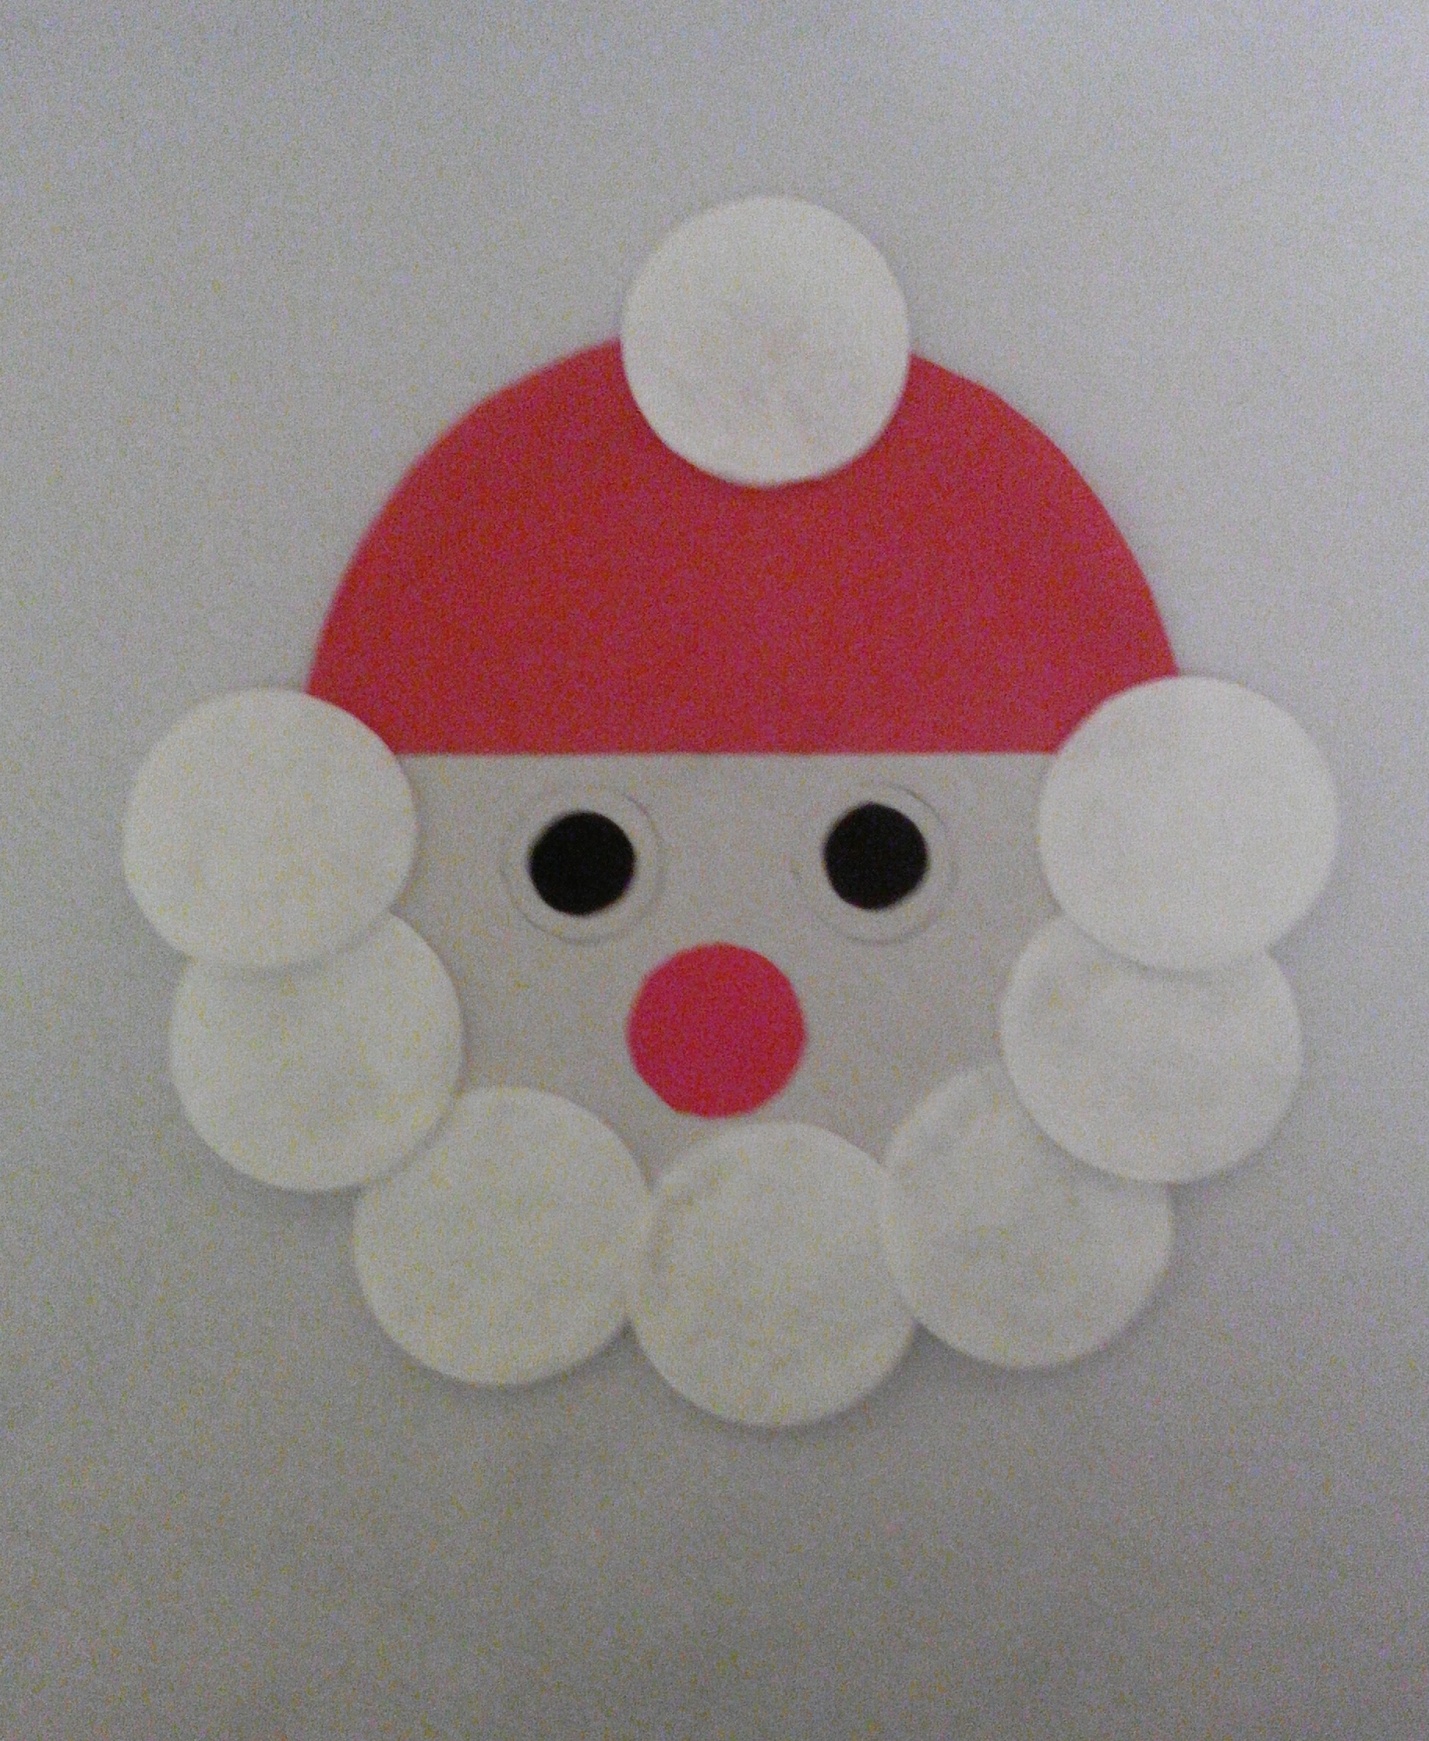 Master class dettagliato su come realizzare Babbo Natale con dischetti di cotone